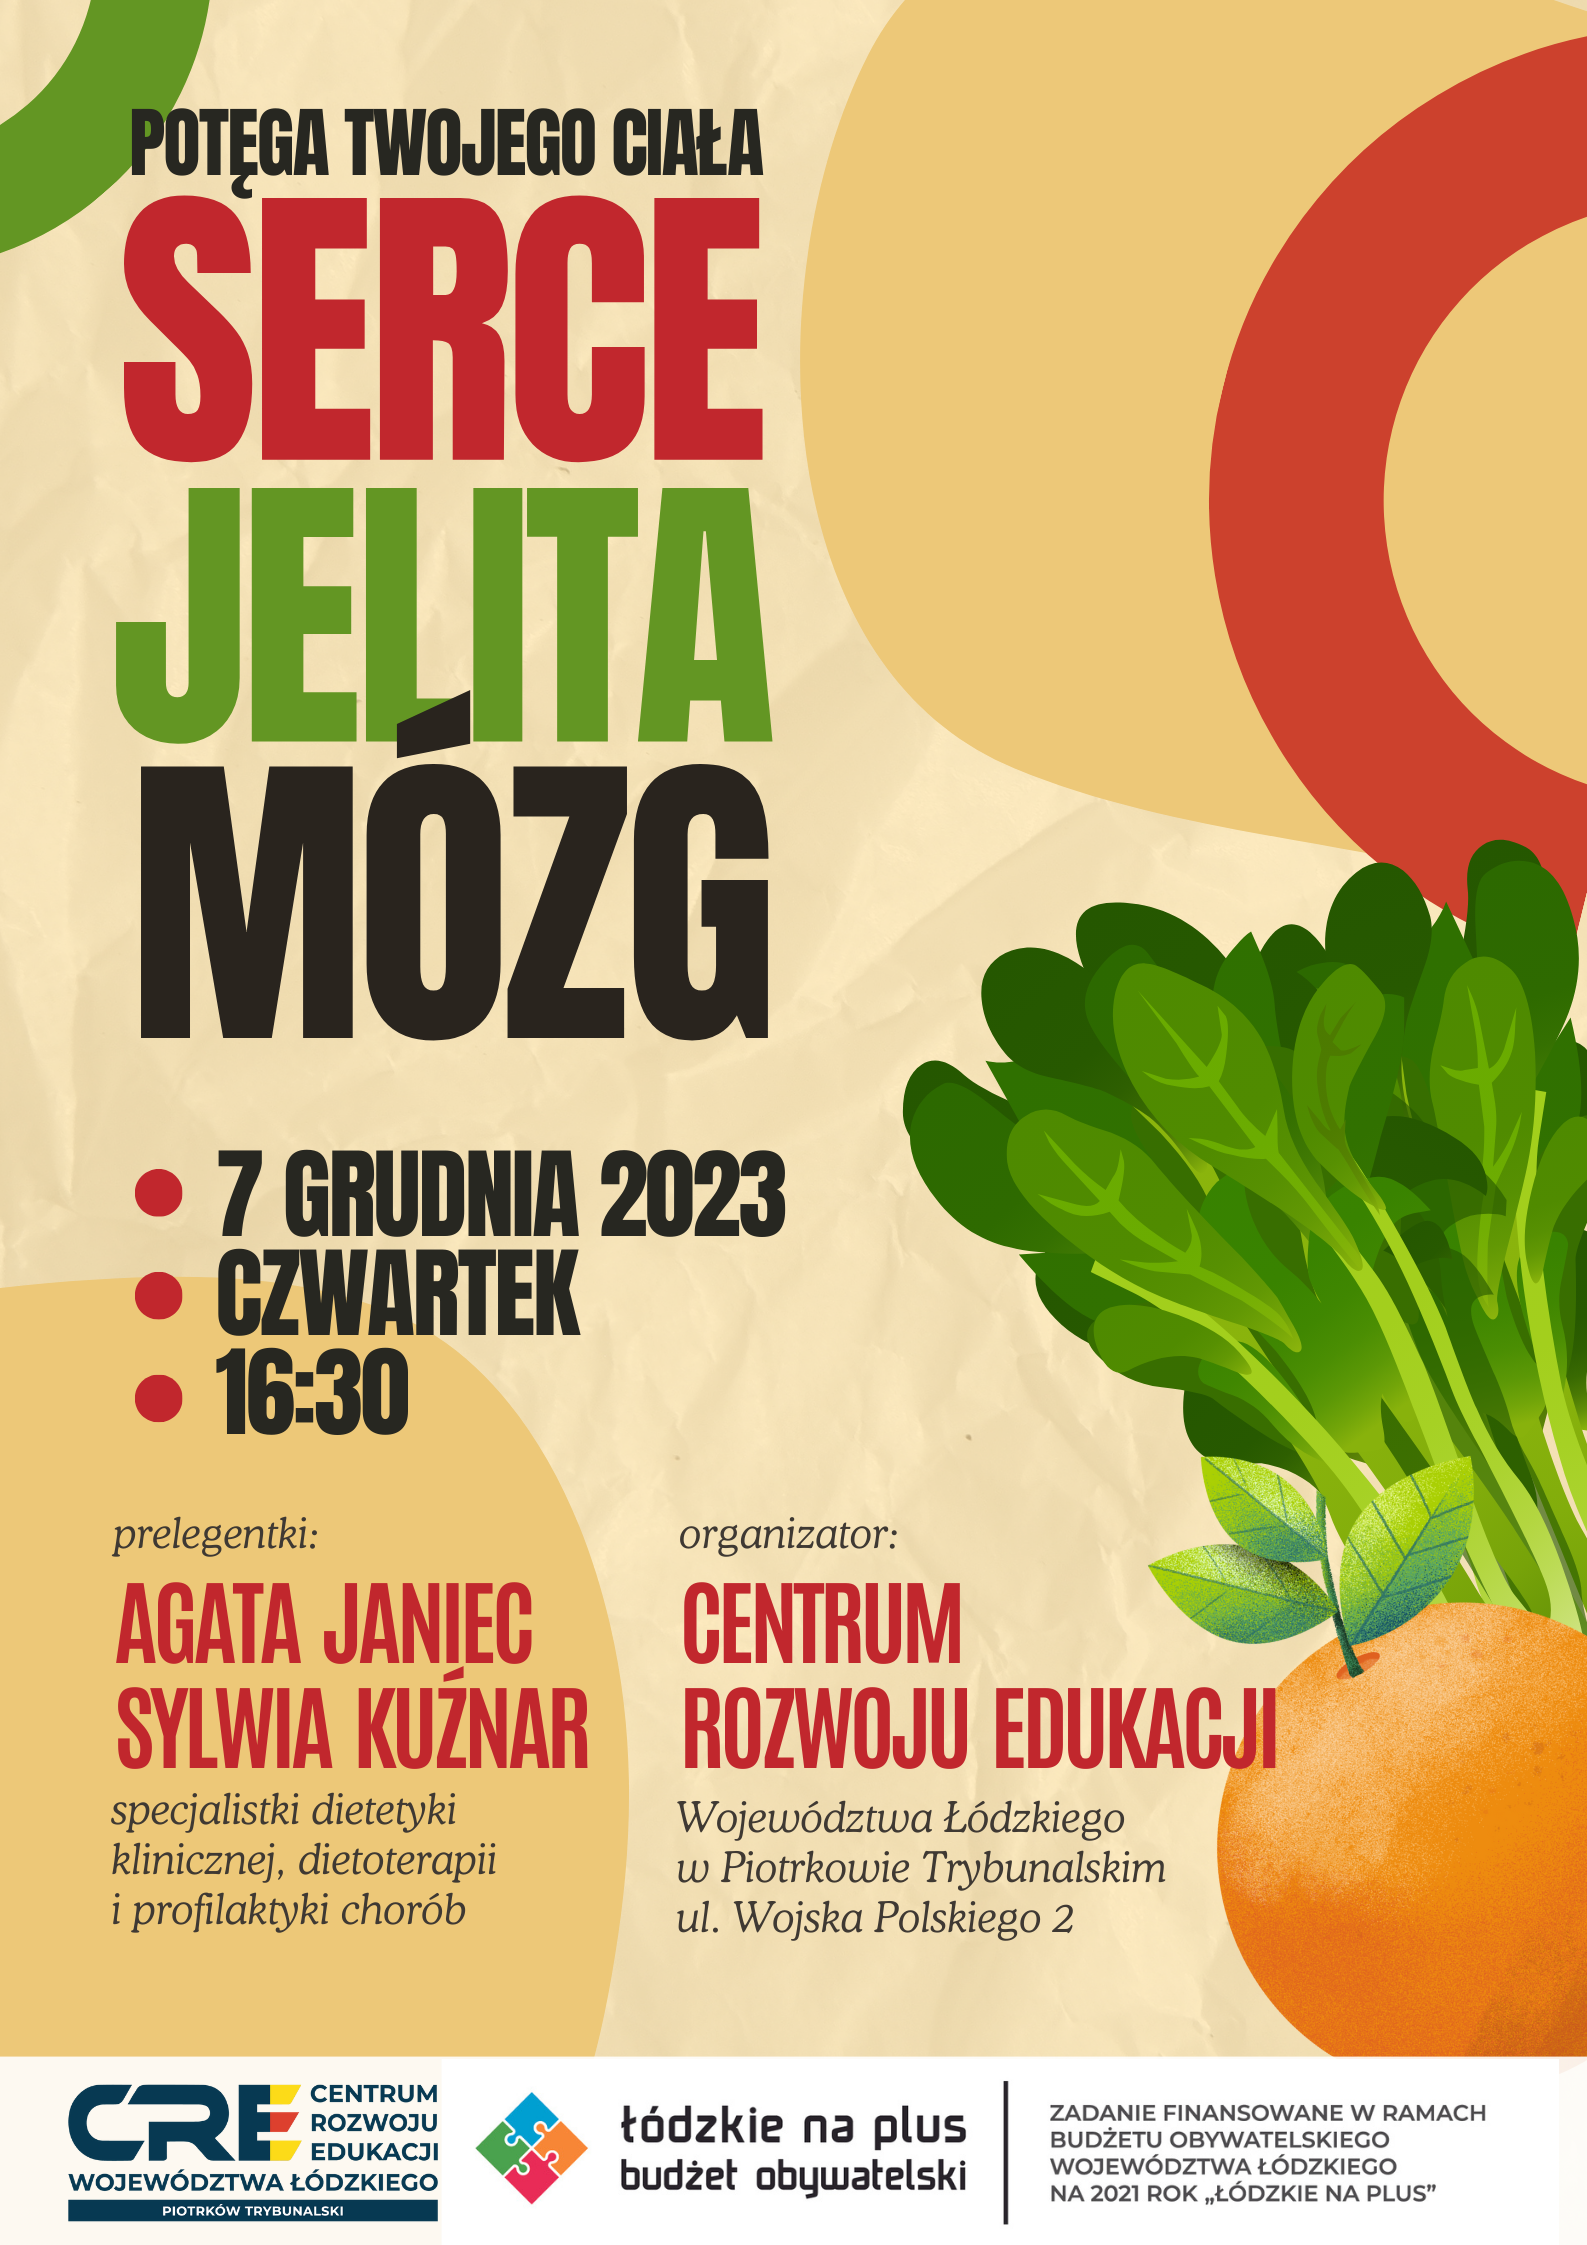 SERCE, JELITA, MÓZG. SPOTKANIE Z DIETETYKAMI - 7.12.2023